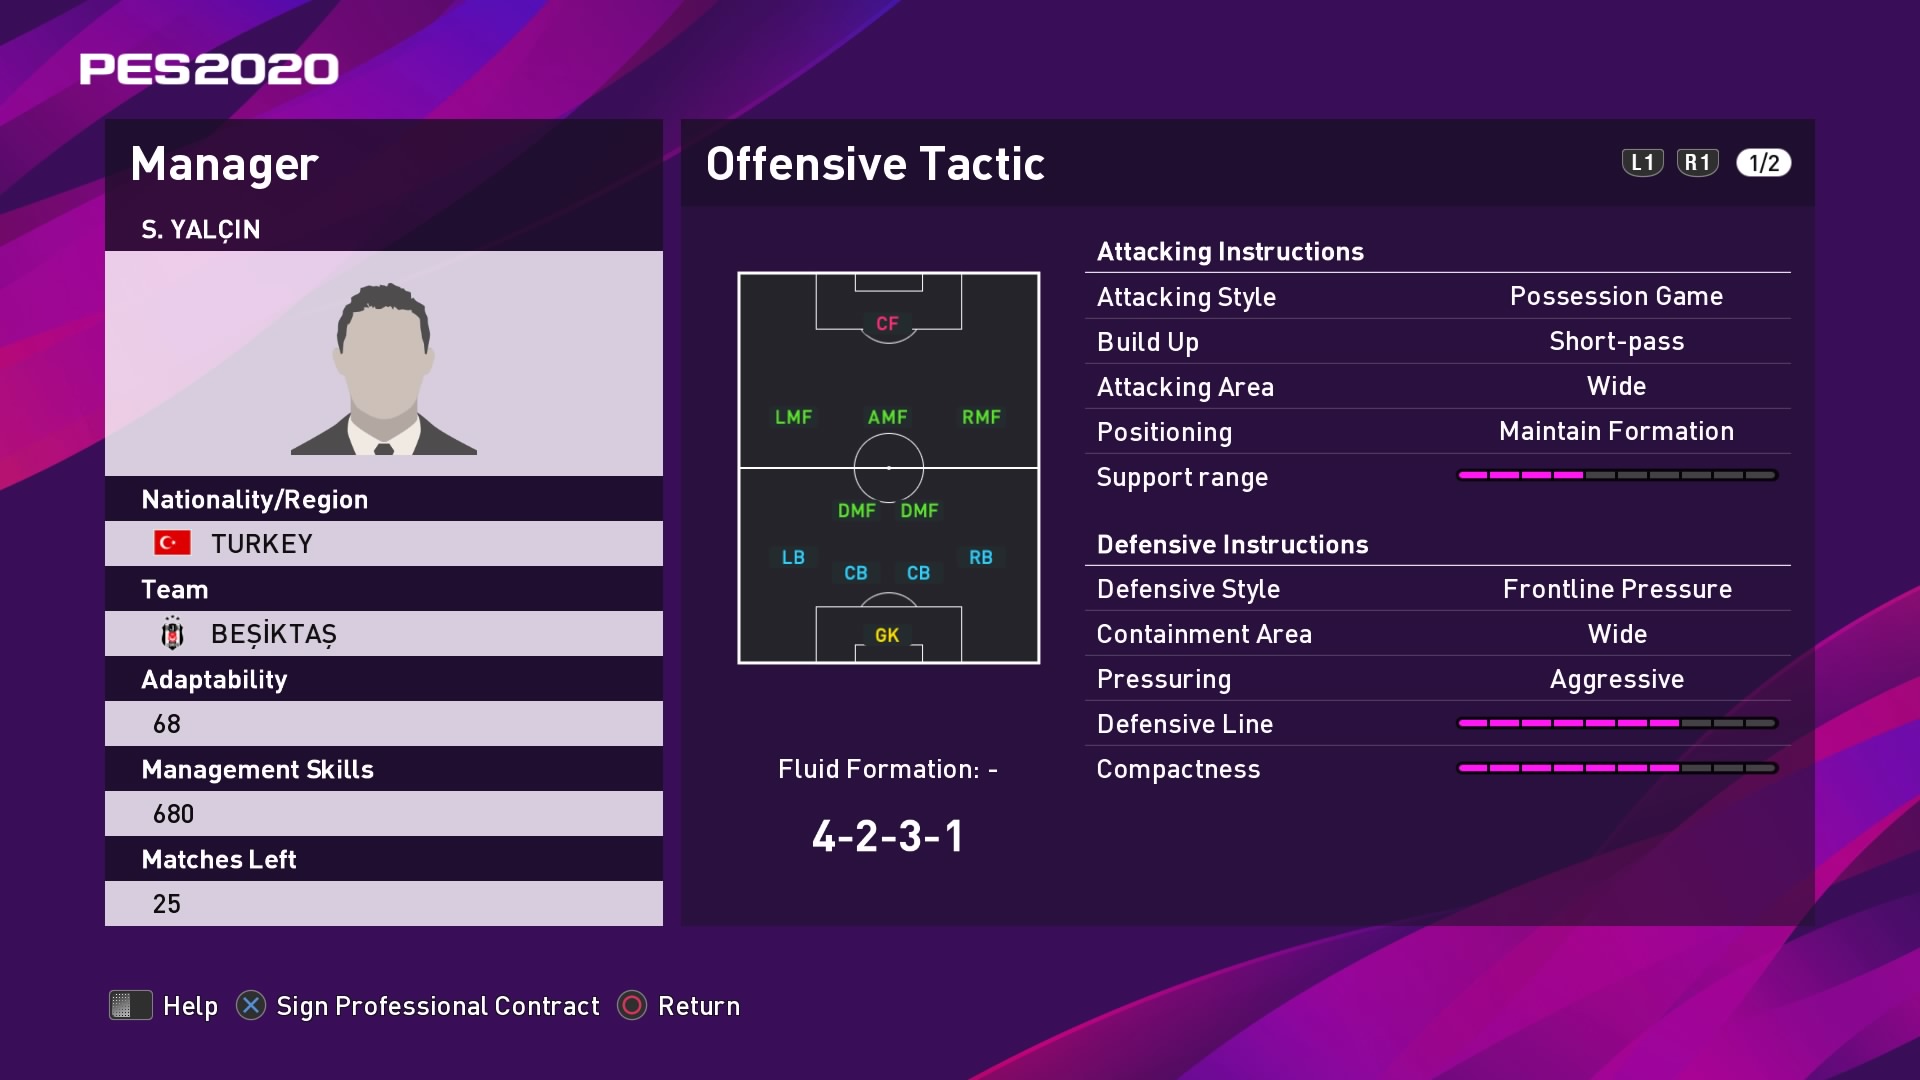 Sergen Yalçın - Player profile